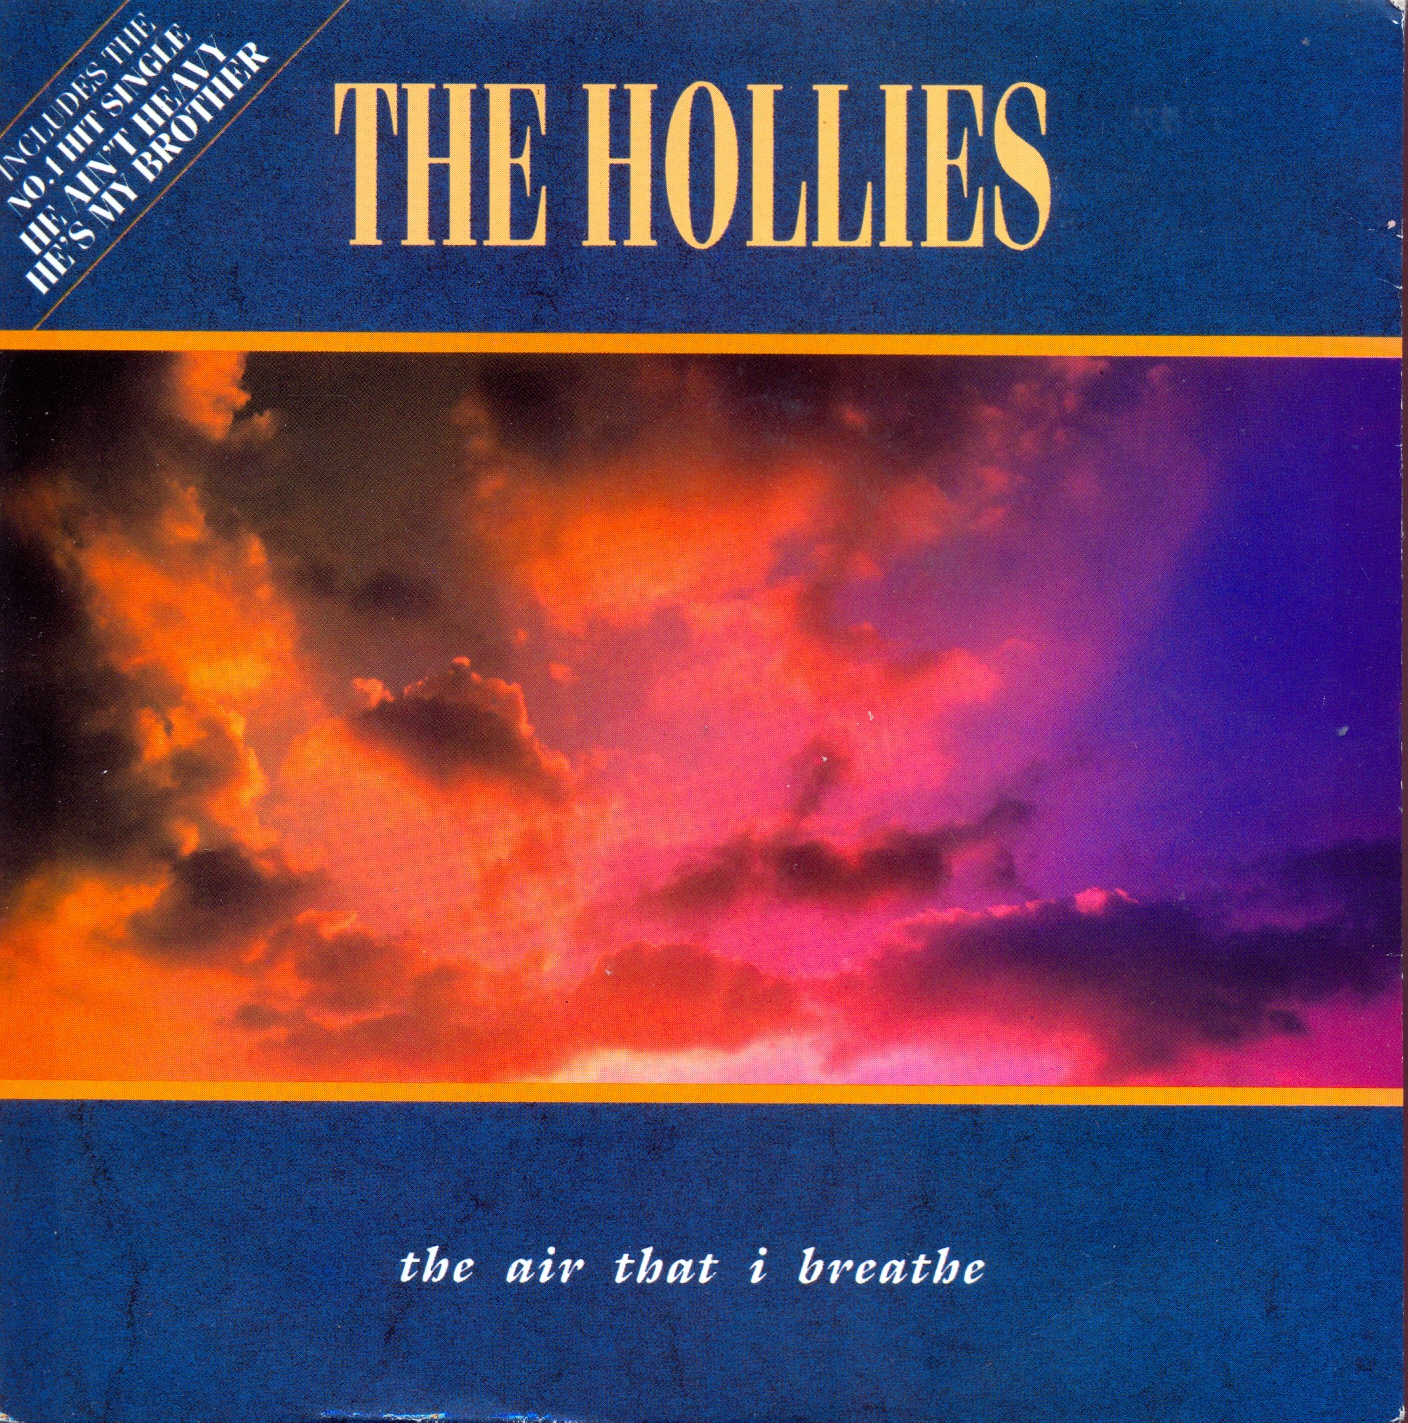 Hollies - The air that i breathe